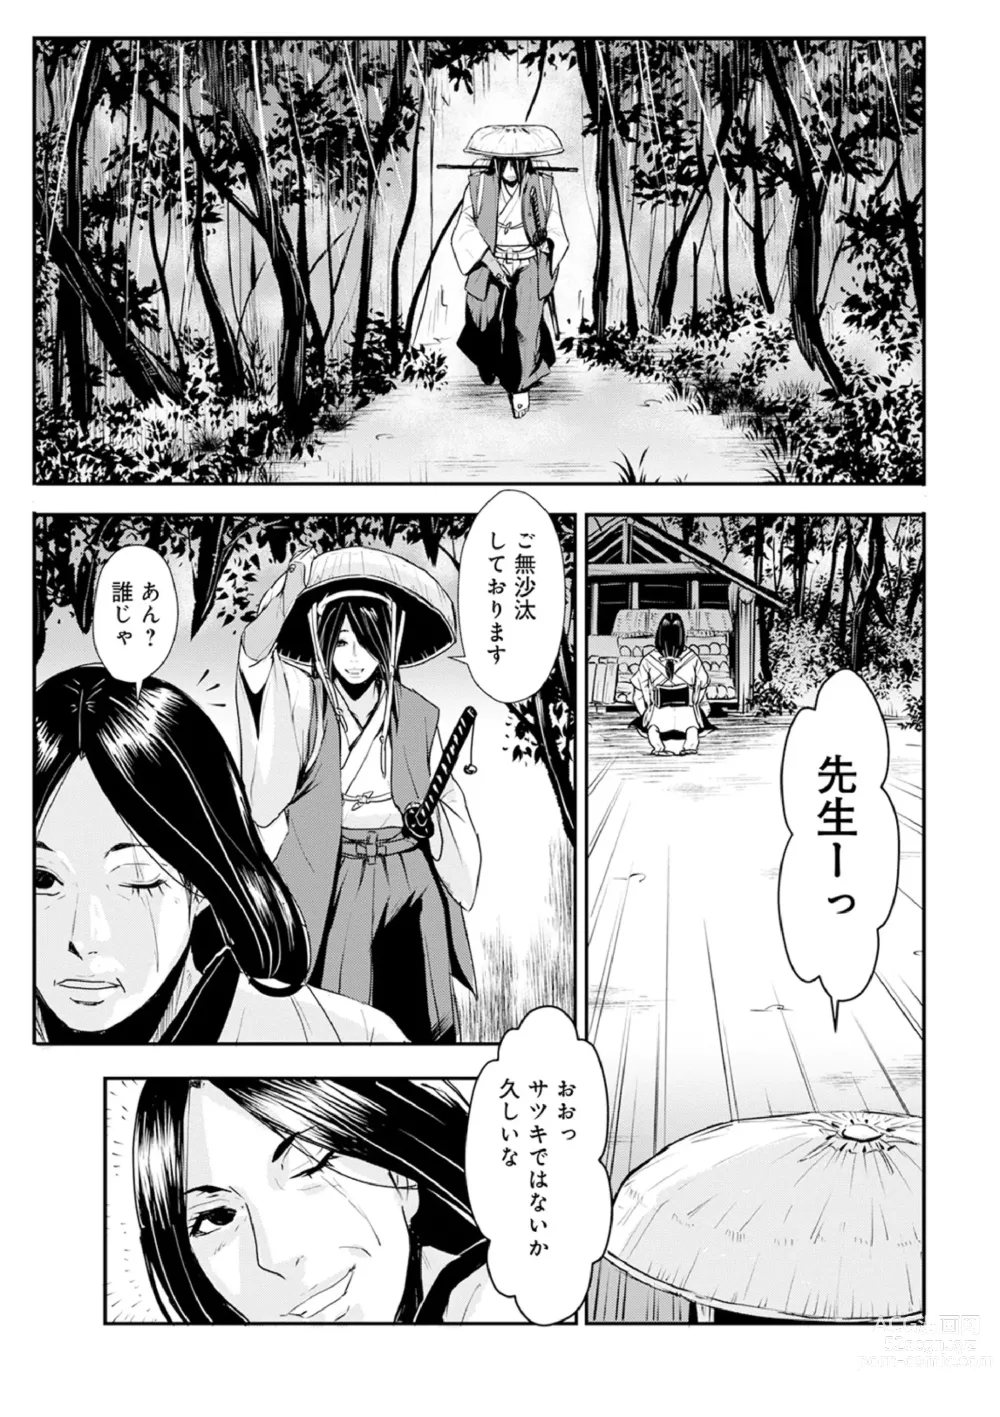 Page 3 of manga Harami samurai 12 ~Sekigan no Tosho no Nuresoboru Futanari no Kanjuku Dankon Nyotai~